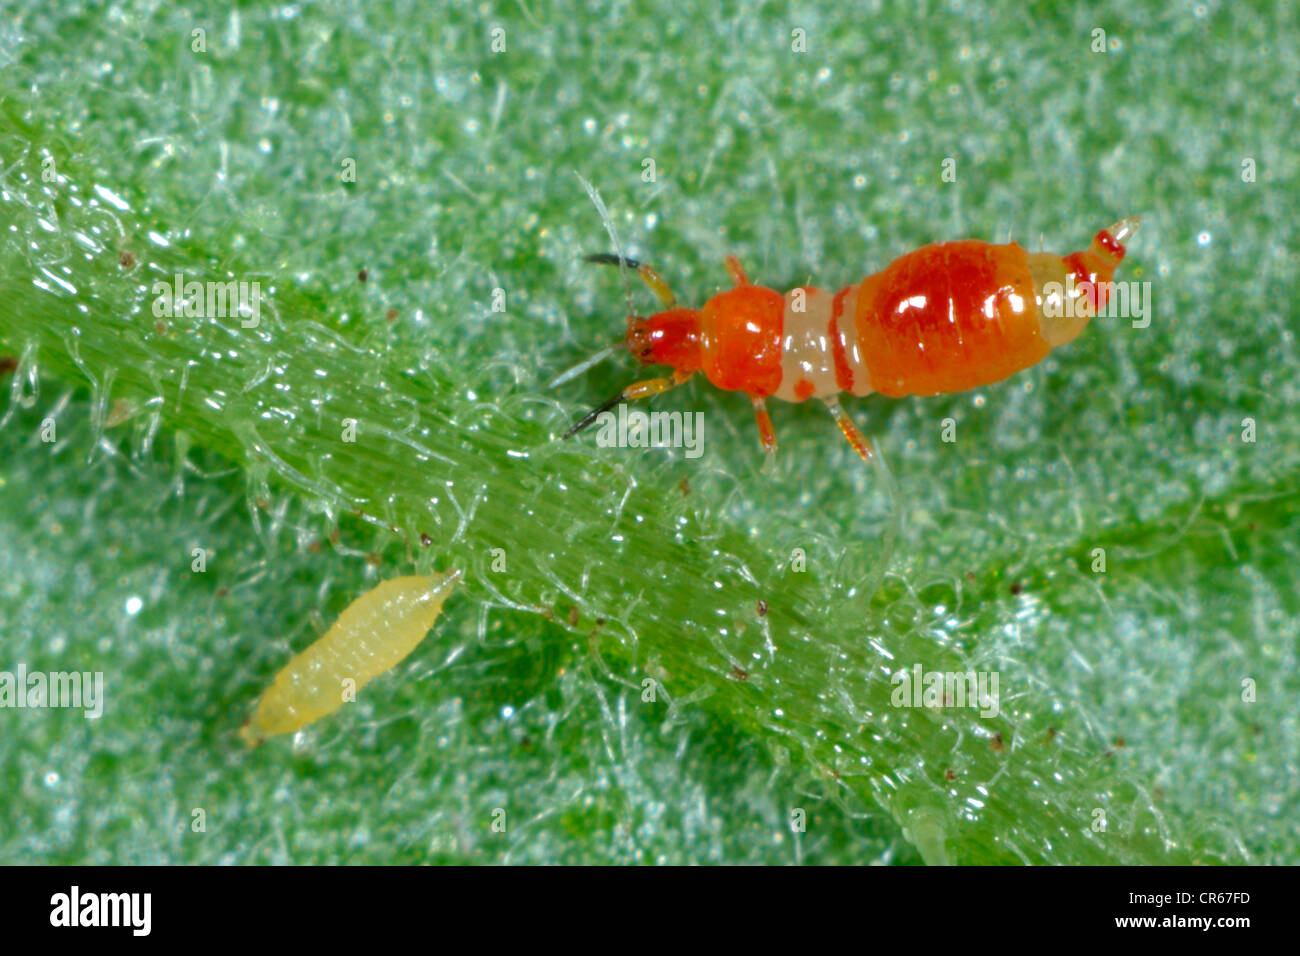 Thrips prédateurs (Franklinothrips vespiformis) larve avec thrips larve proie Banque D'Images